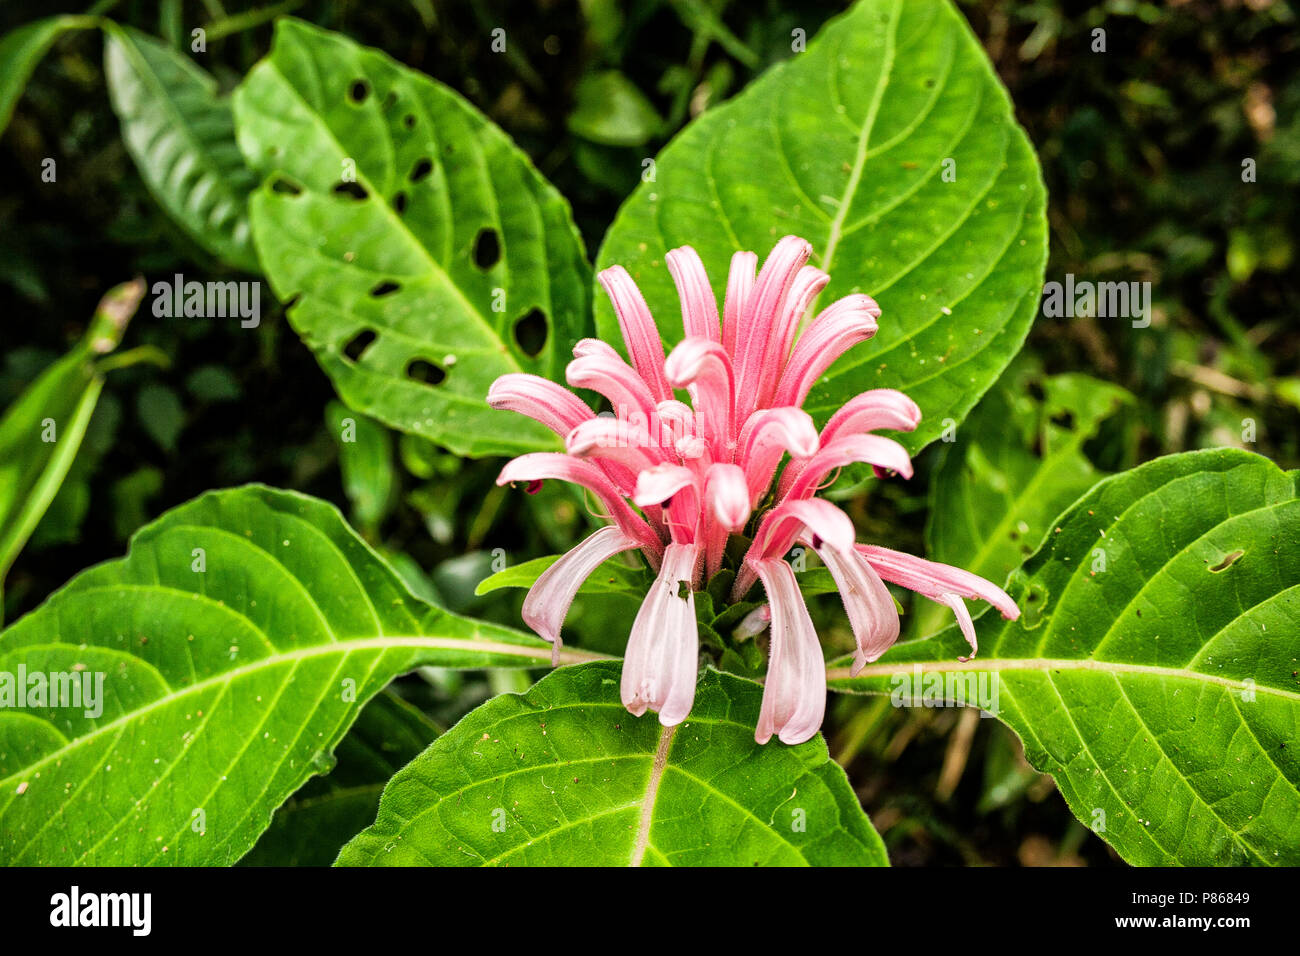 Justícia (Justicia carnea). Florianópolis, Santa Catarina, Brasil. /  Brazilian plume flower (Justicia carnea). Florianópolis, Santa Catarina, Brazil. Stock Photo